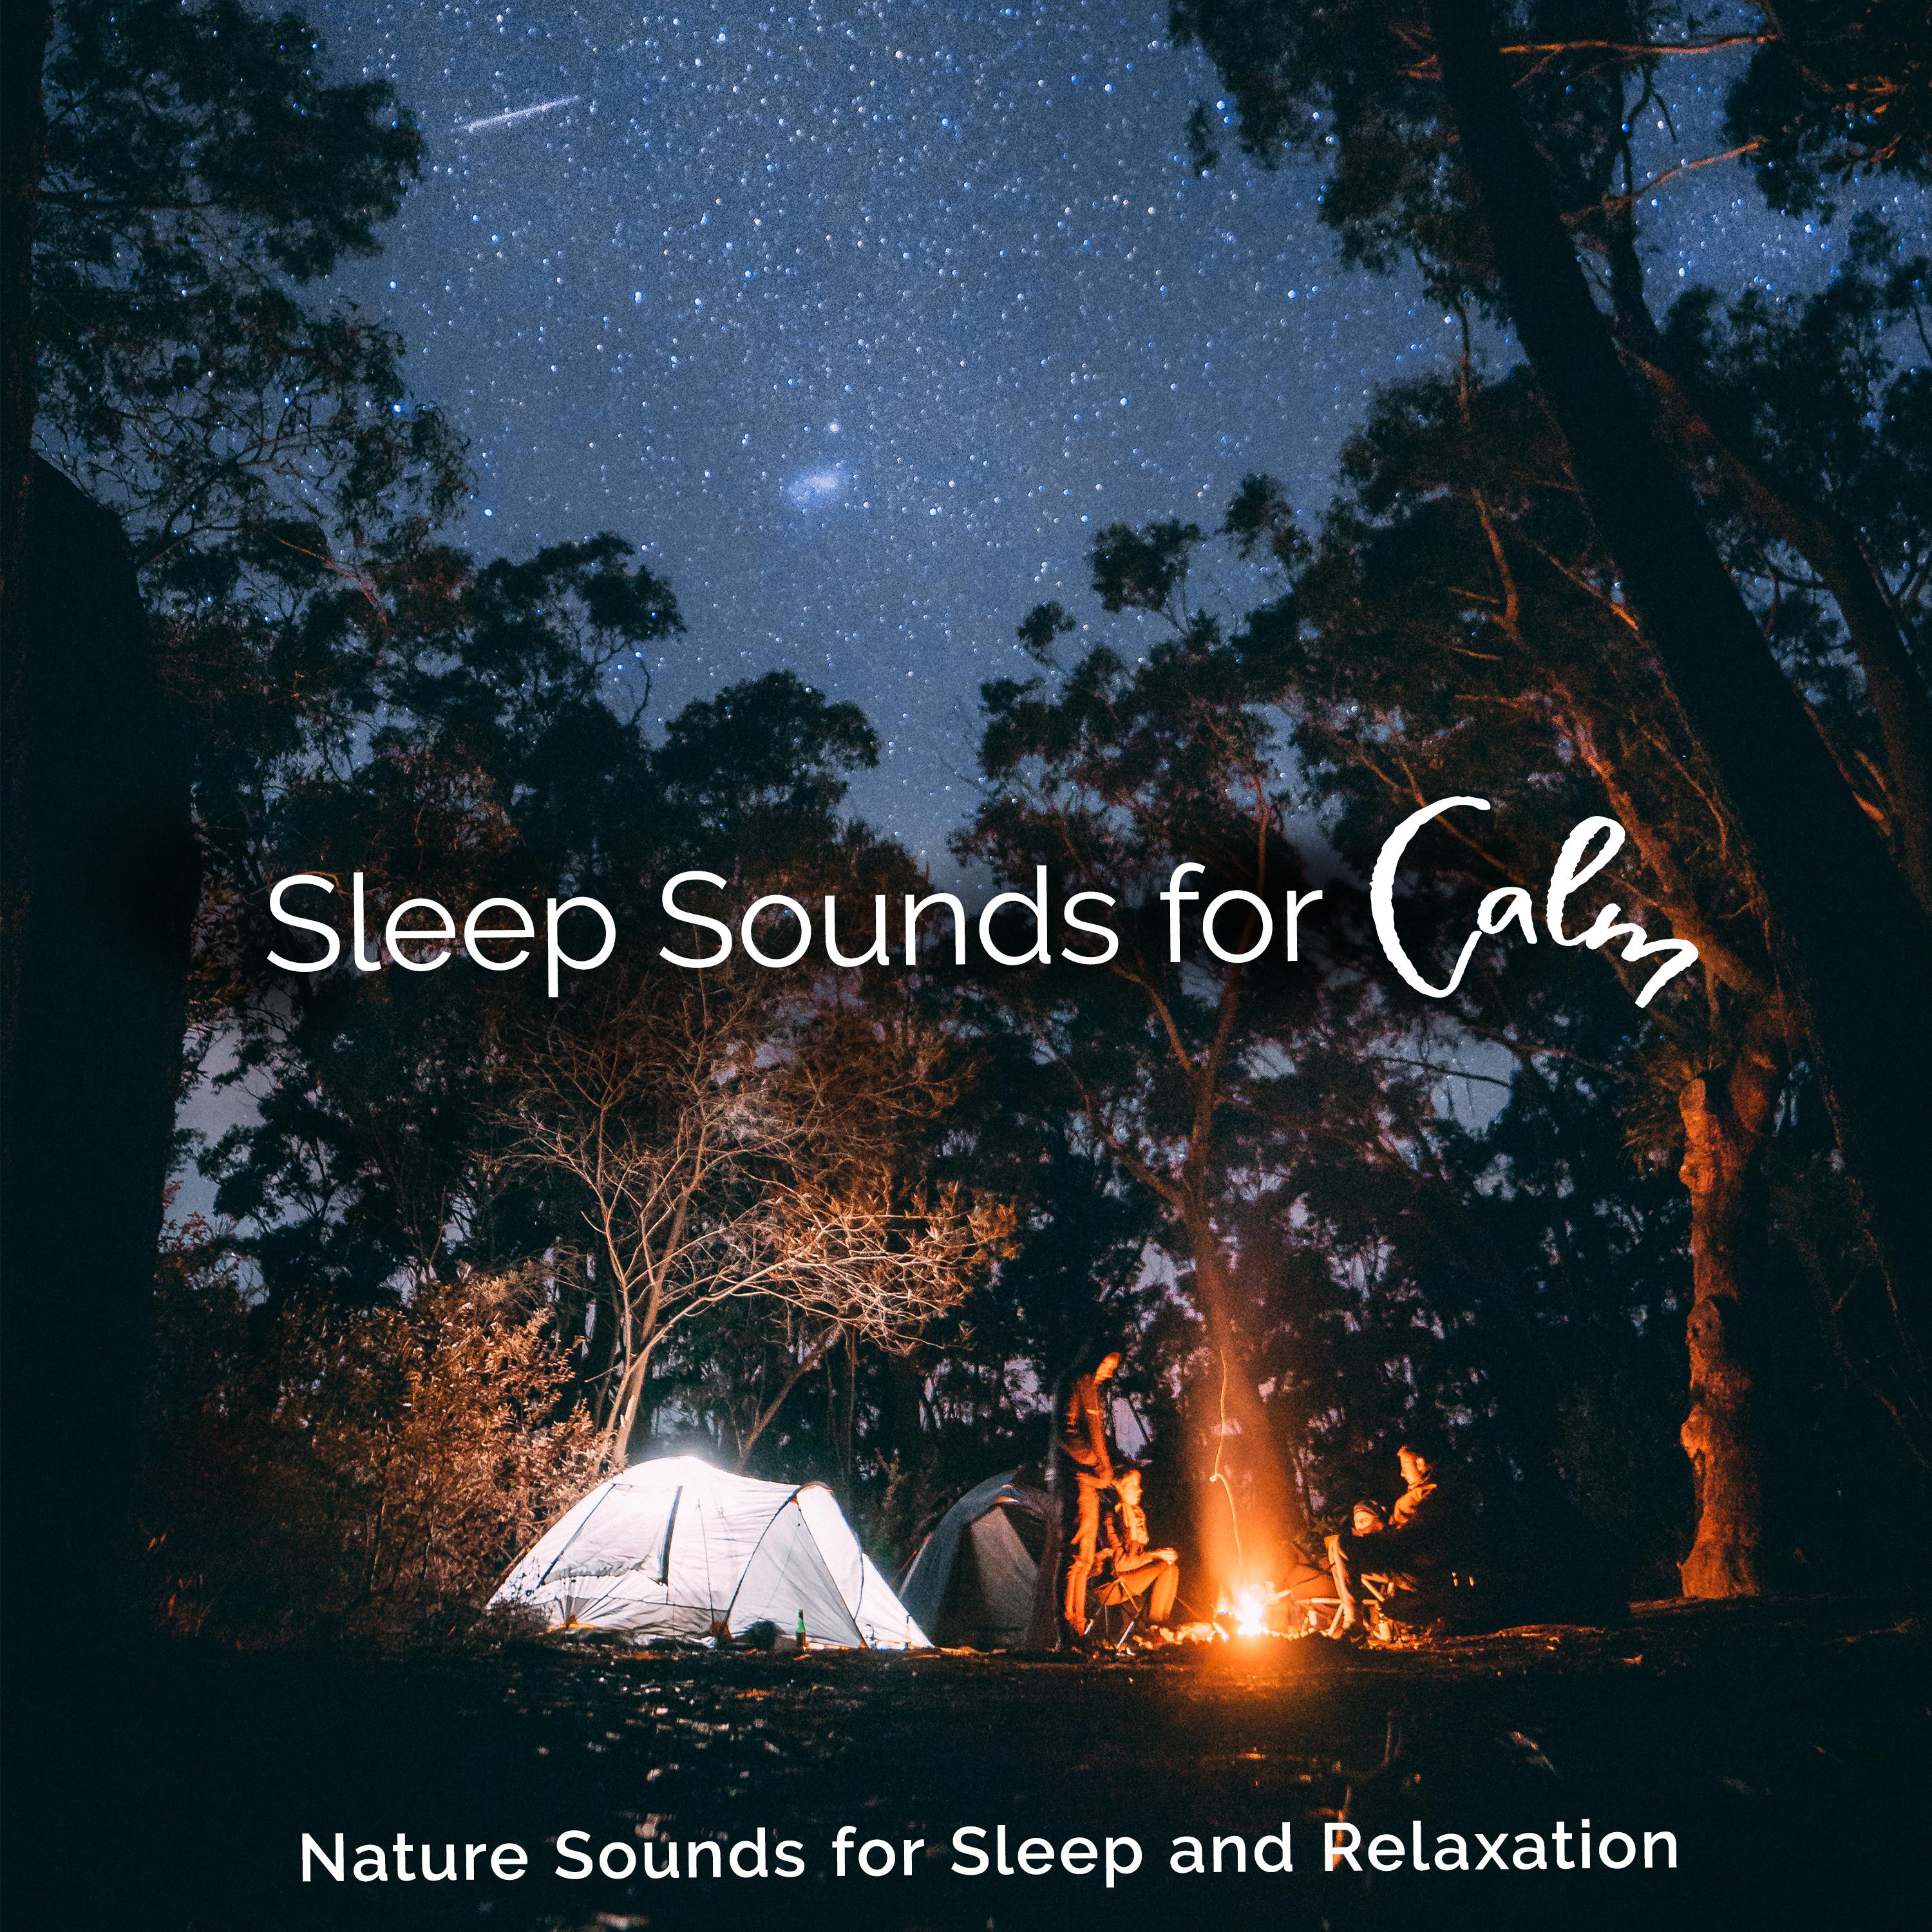 Sleep Sounds for Calm